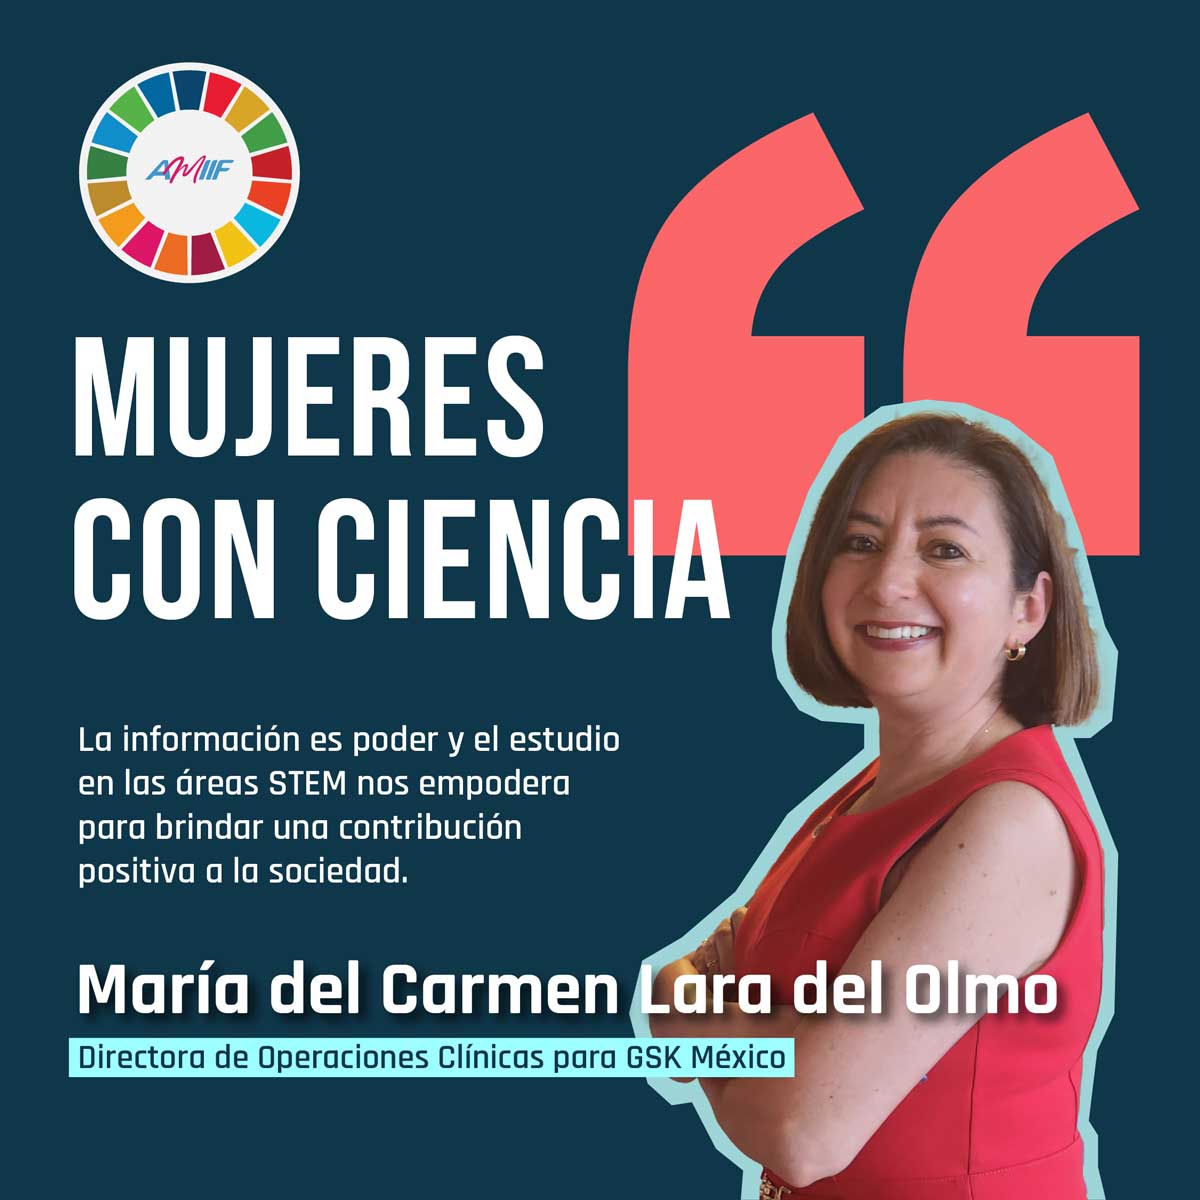 María del Carmen Lara del Olmo